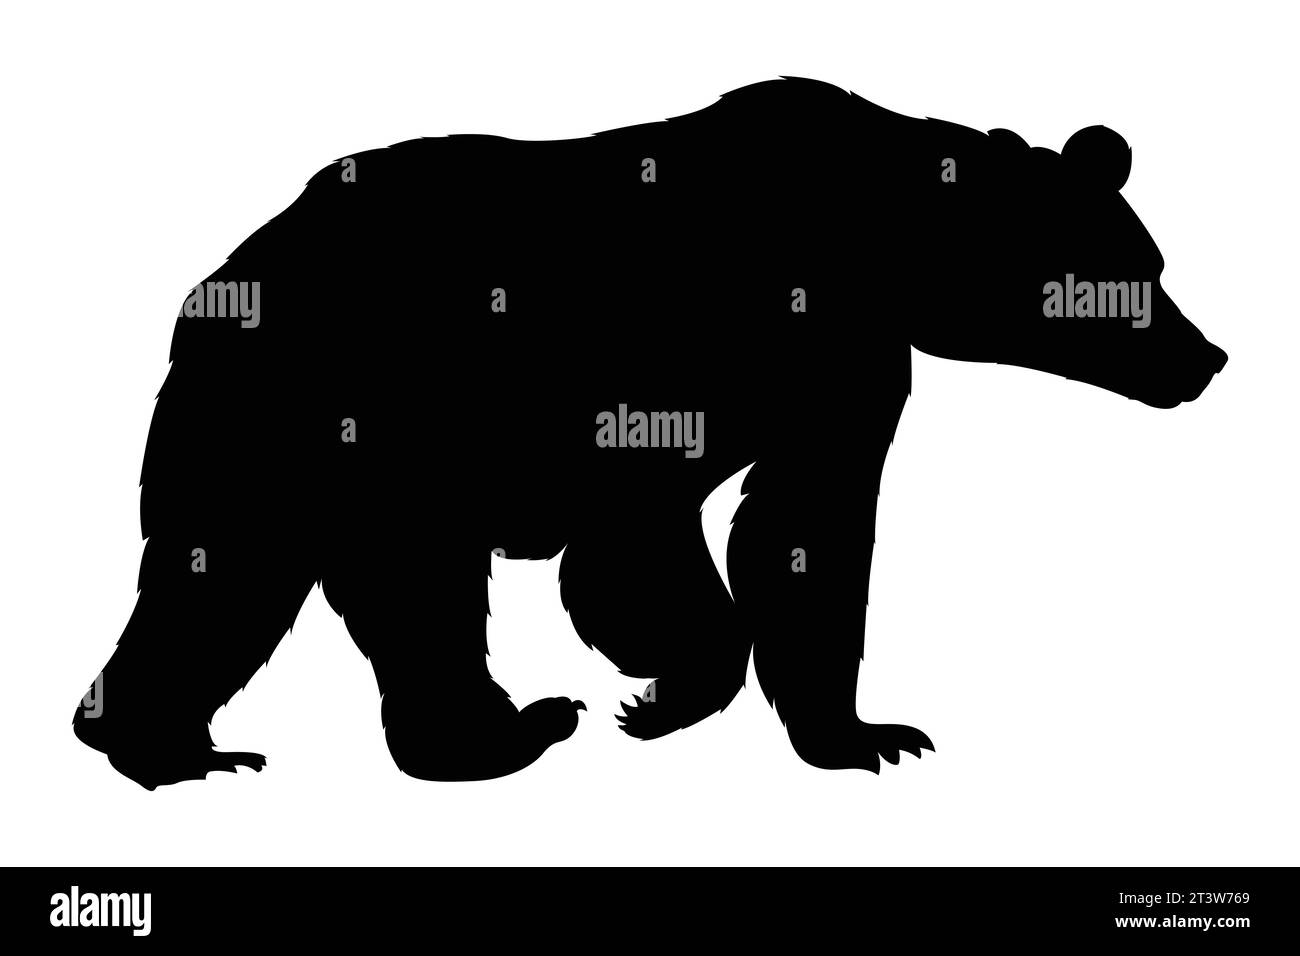 Ilustración de un conjunto de silueta de oso dibujado a mano Ilustración del Vector